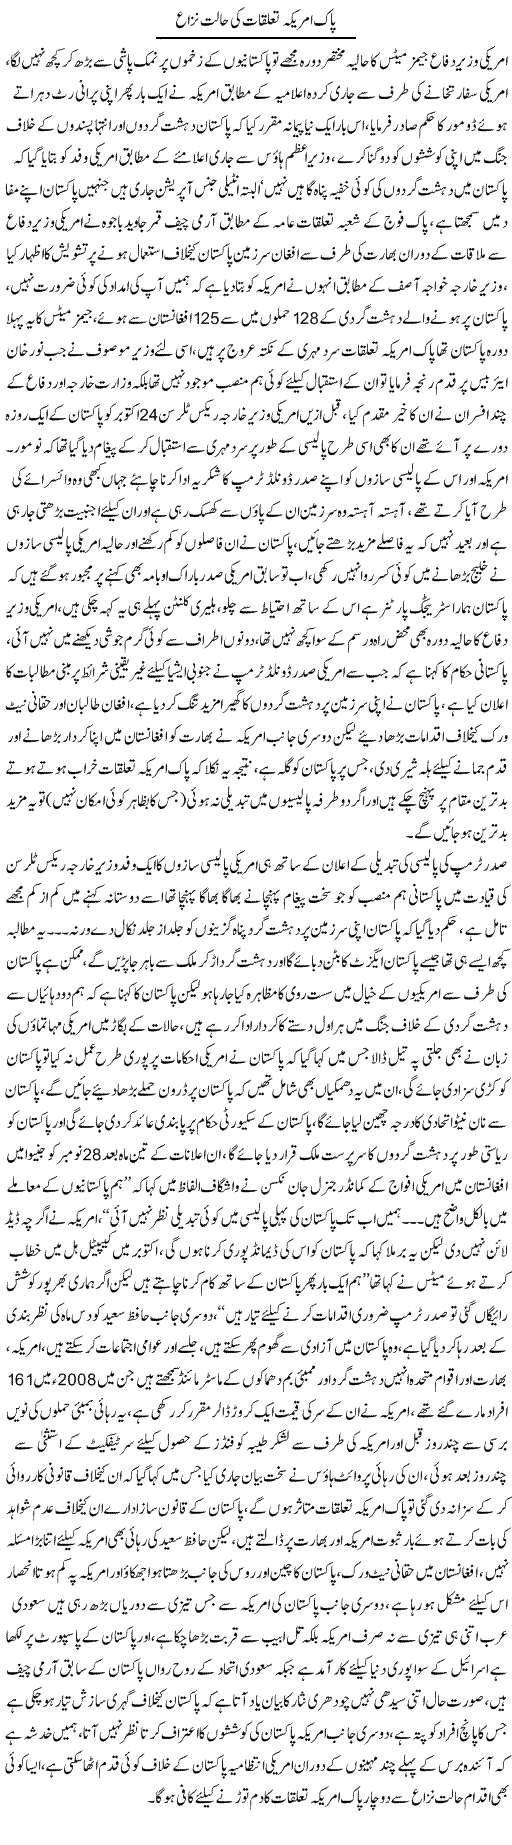 Pak America Taluqaat Ki Halat Zaar | Ali Raza Alvi | Daily Urdu Columns